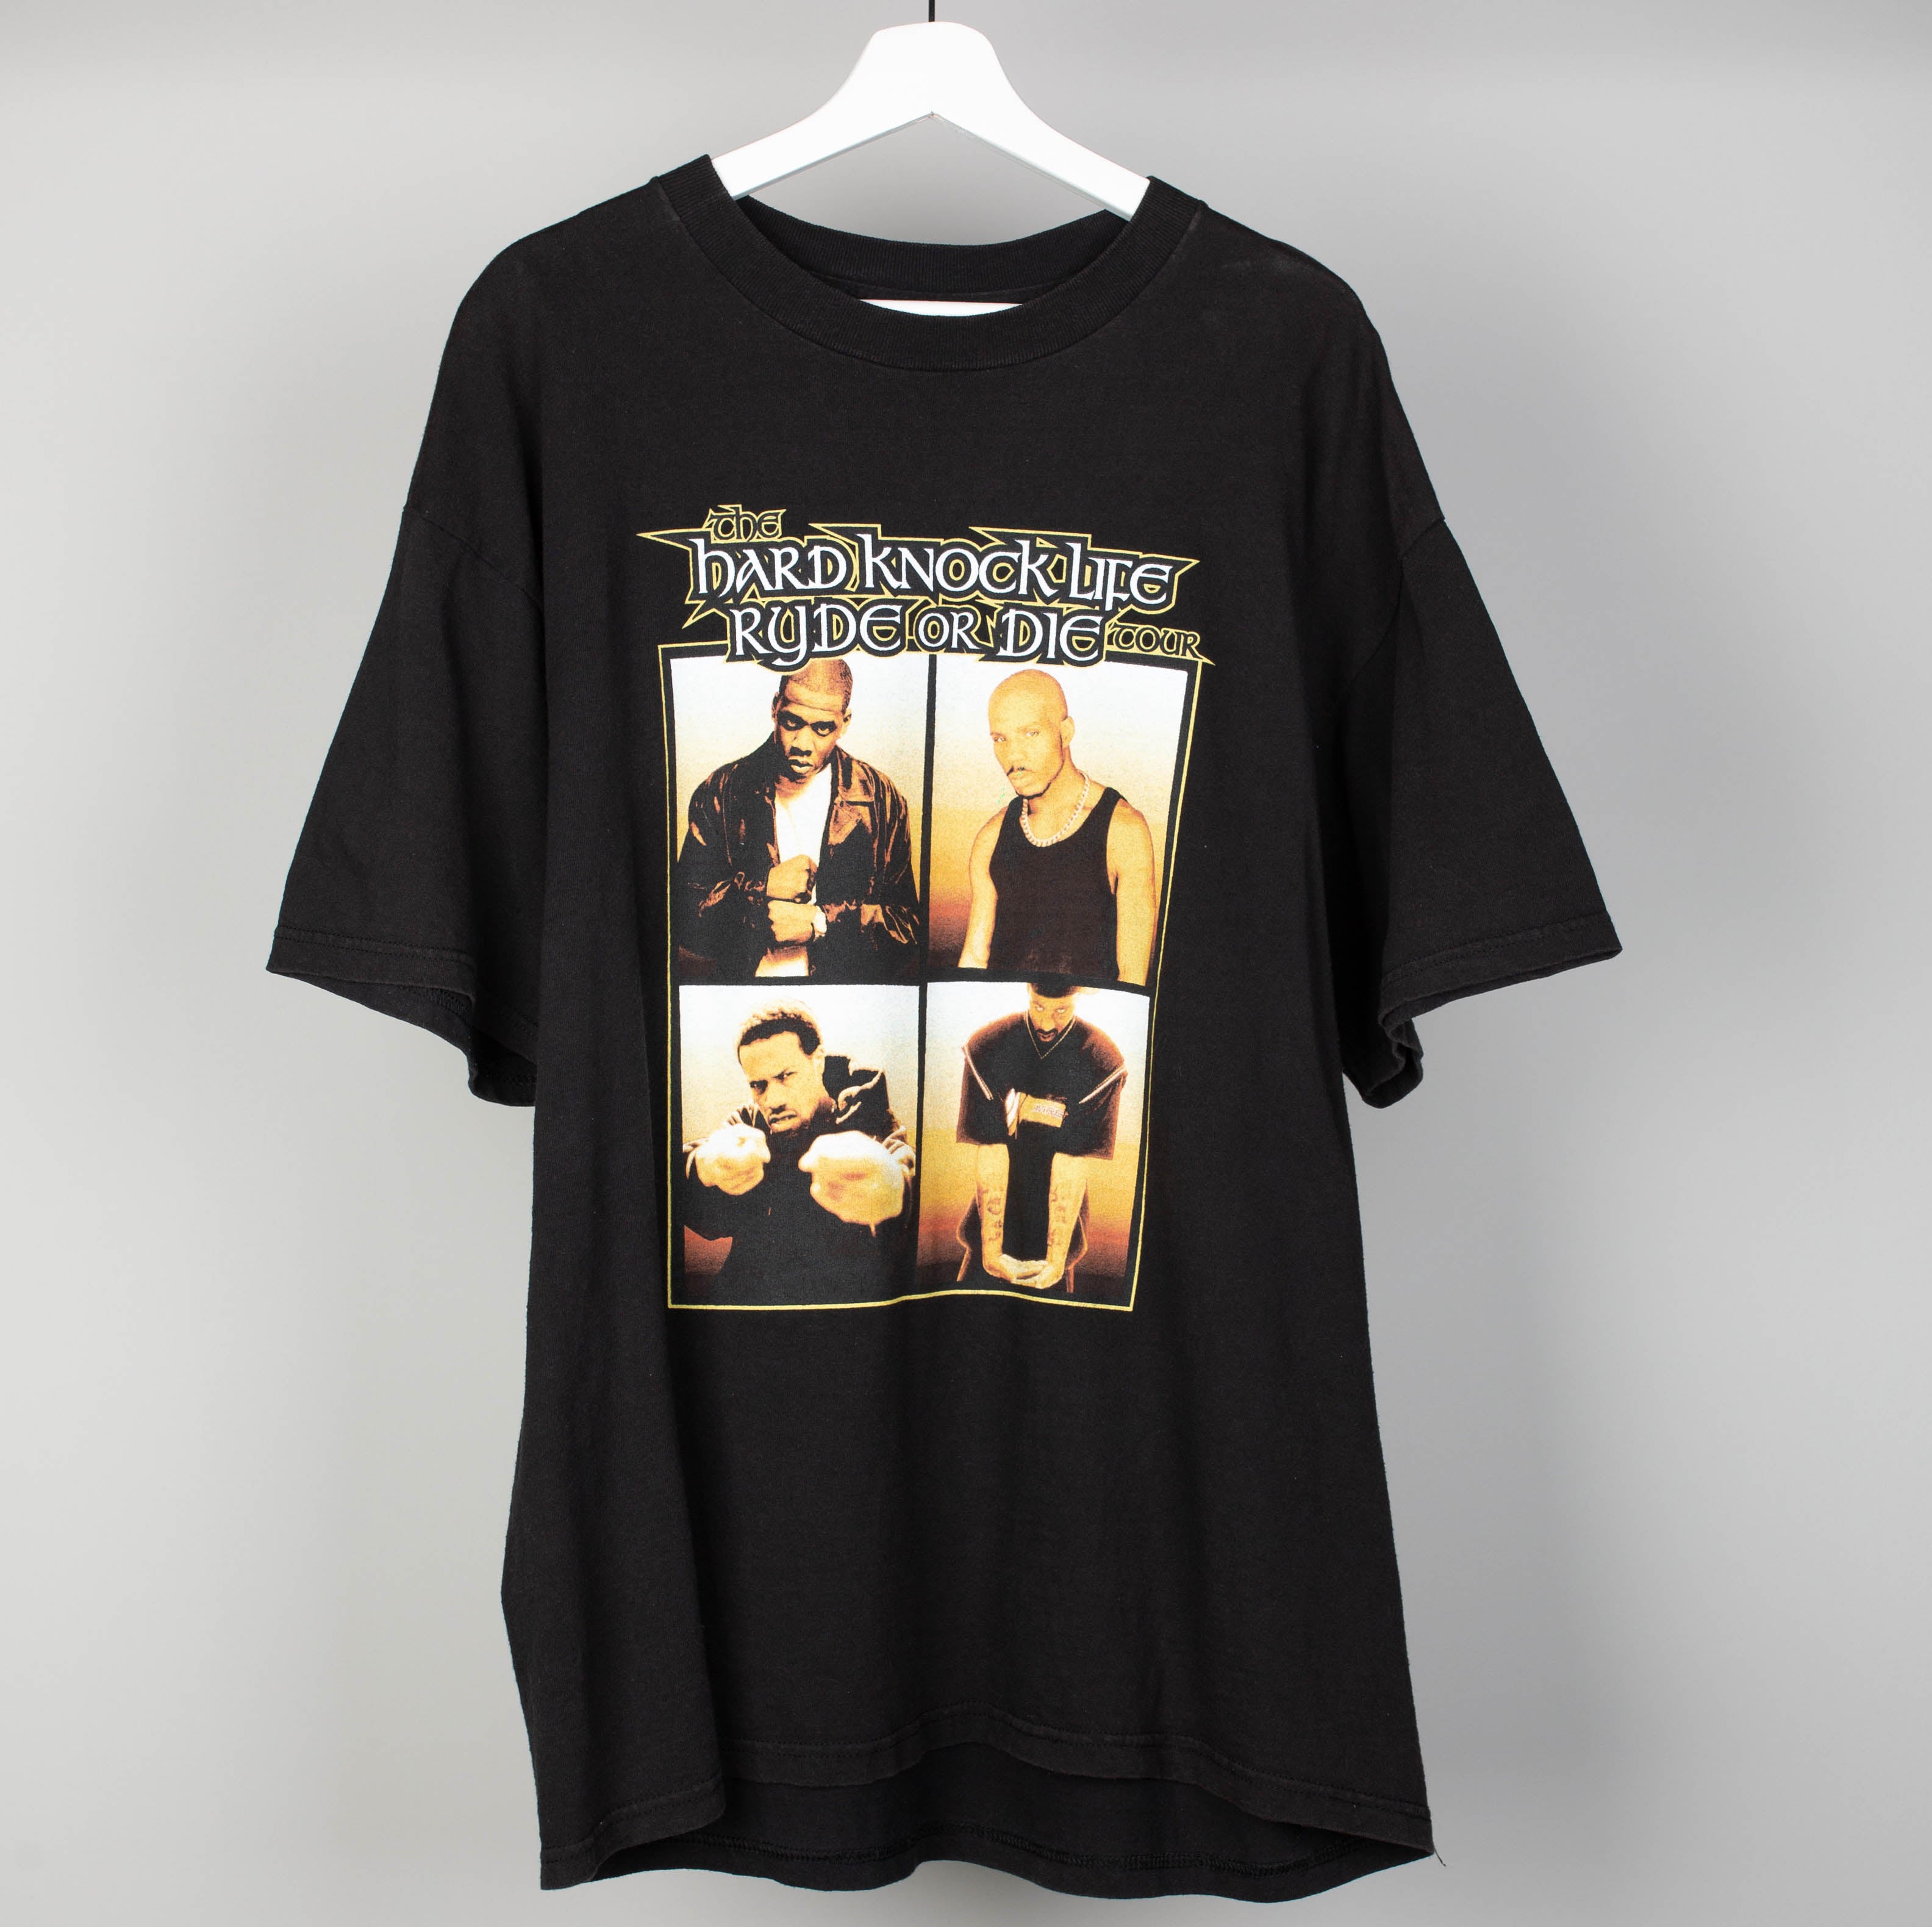 1999 The Hardknock Life Tour T-Shirt Size XL